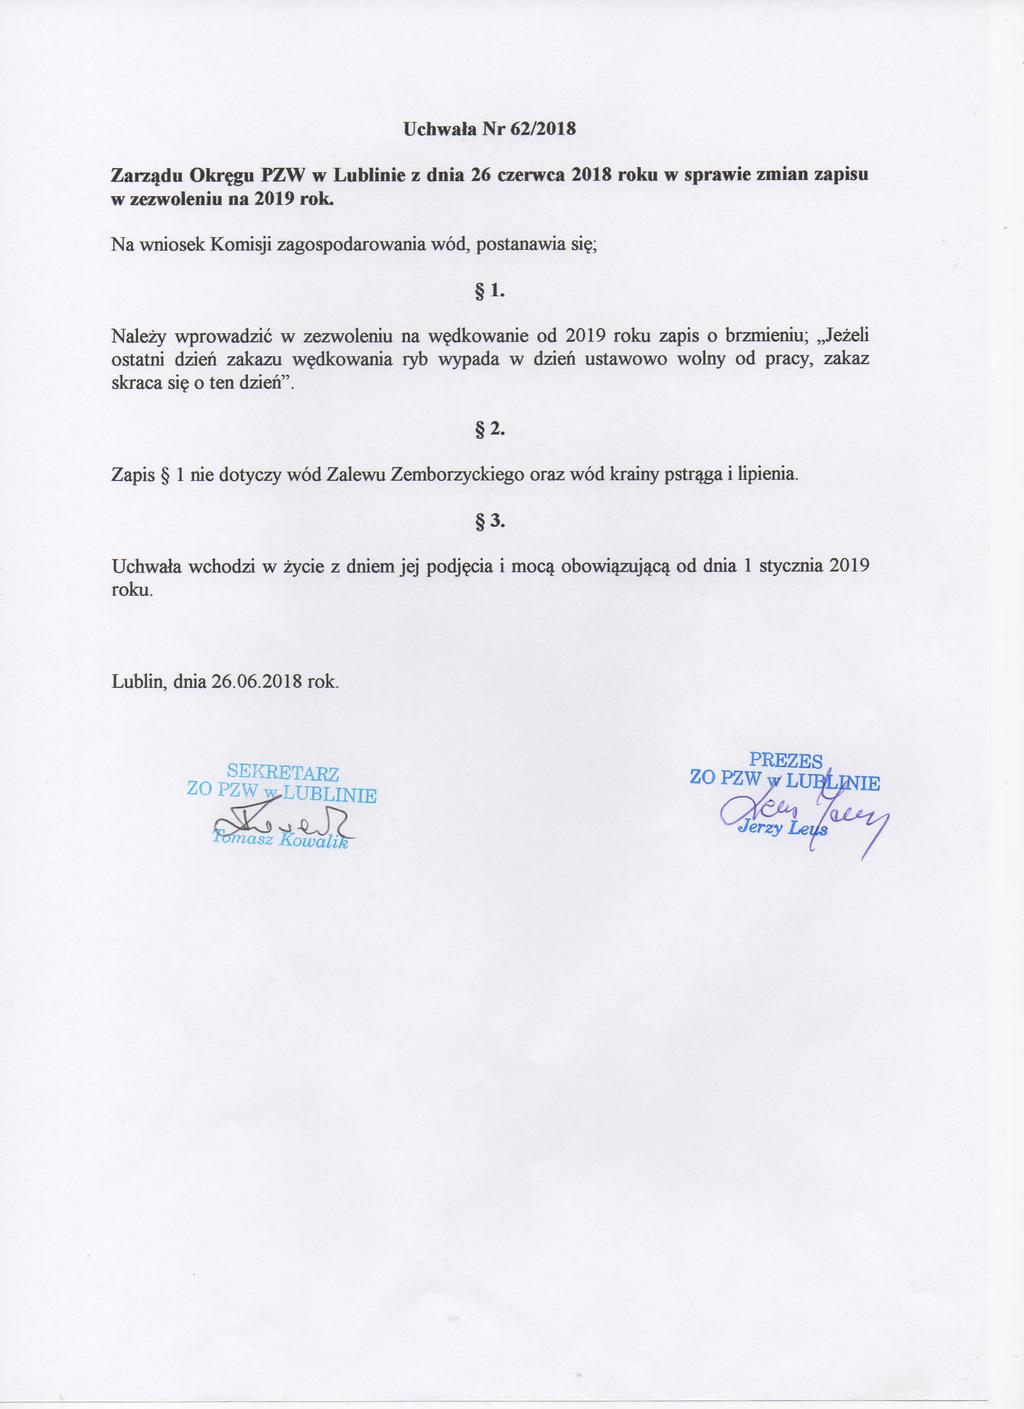 Uchwala Nr 62/2018 Zarzadu Okrejgu PZW w Lublinie z dnia 26 czerwca 2018 roku w sprawie zmian zapisu w zezwoleniu na 2019 rok.